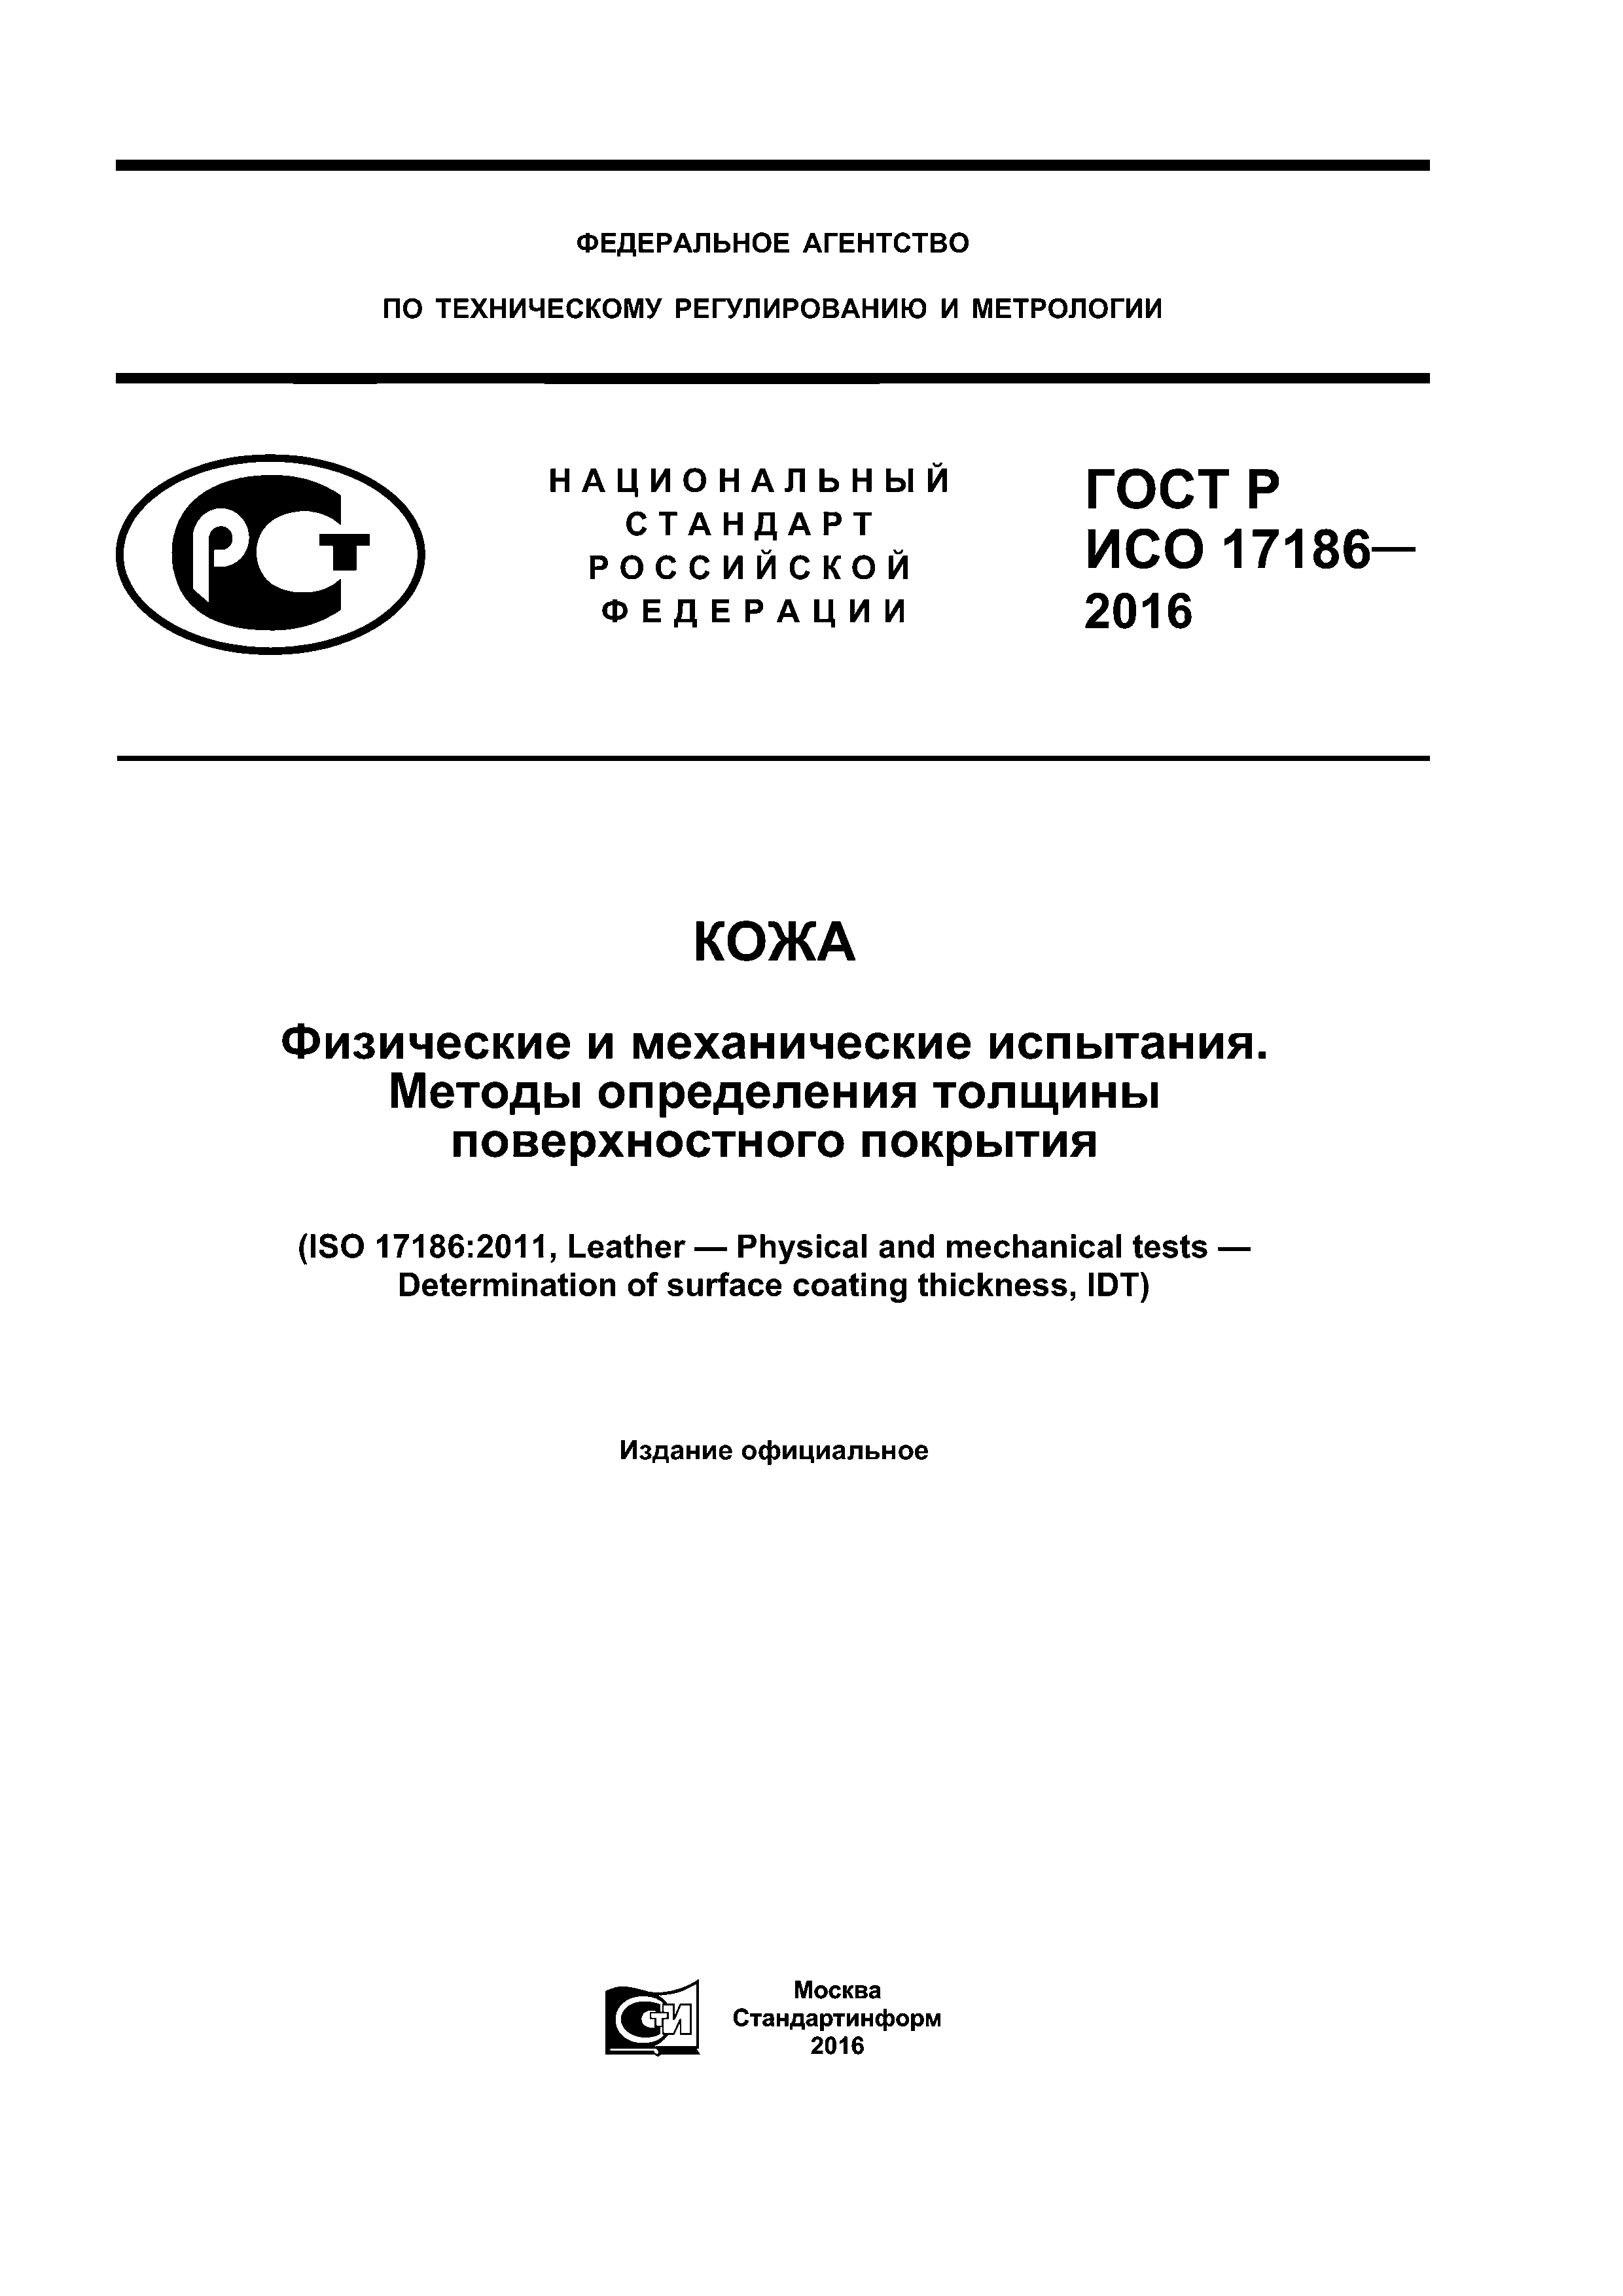 ГОСТ Р ИСО 17186-2016